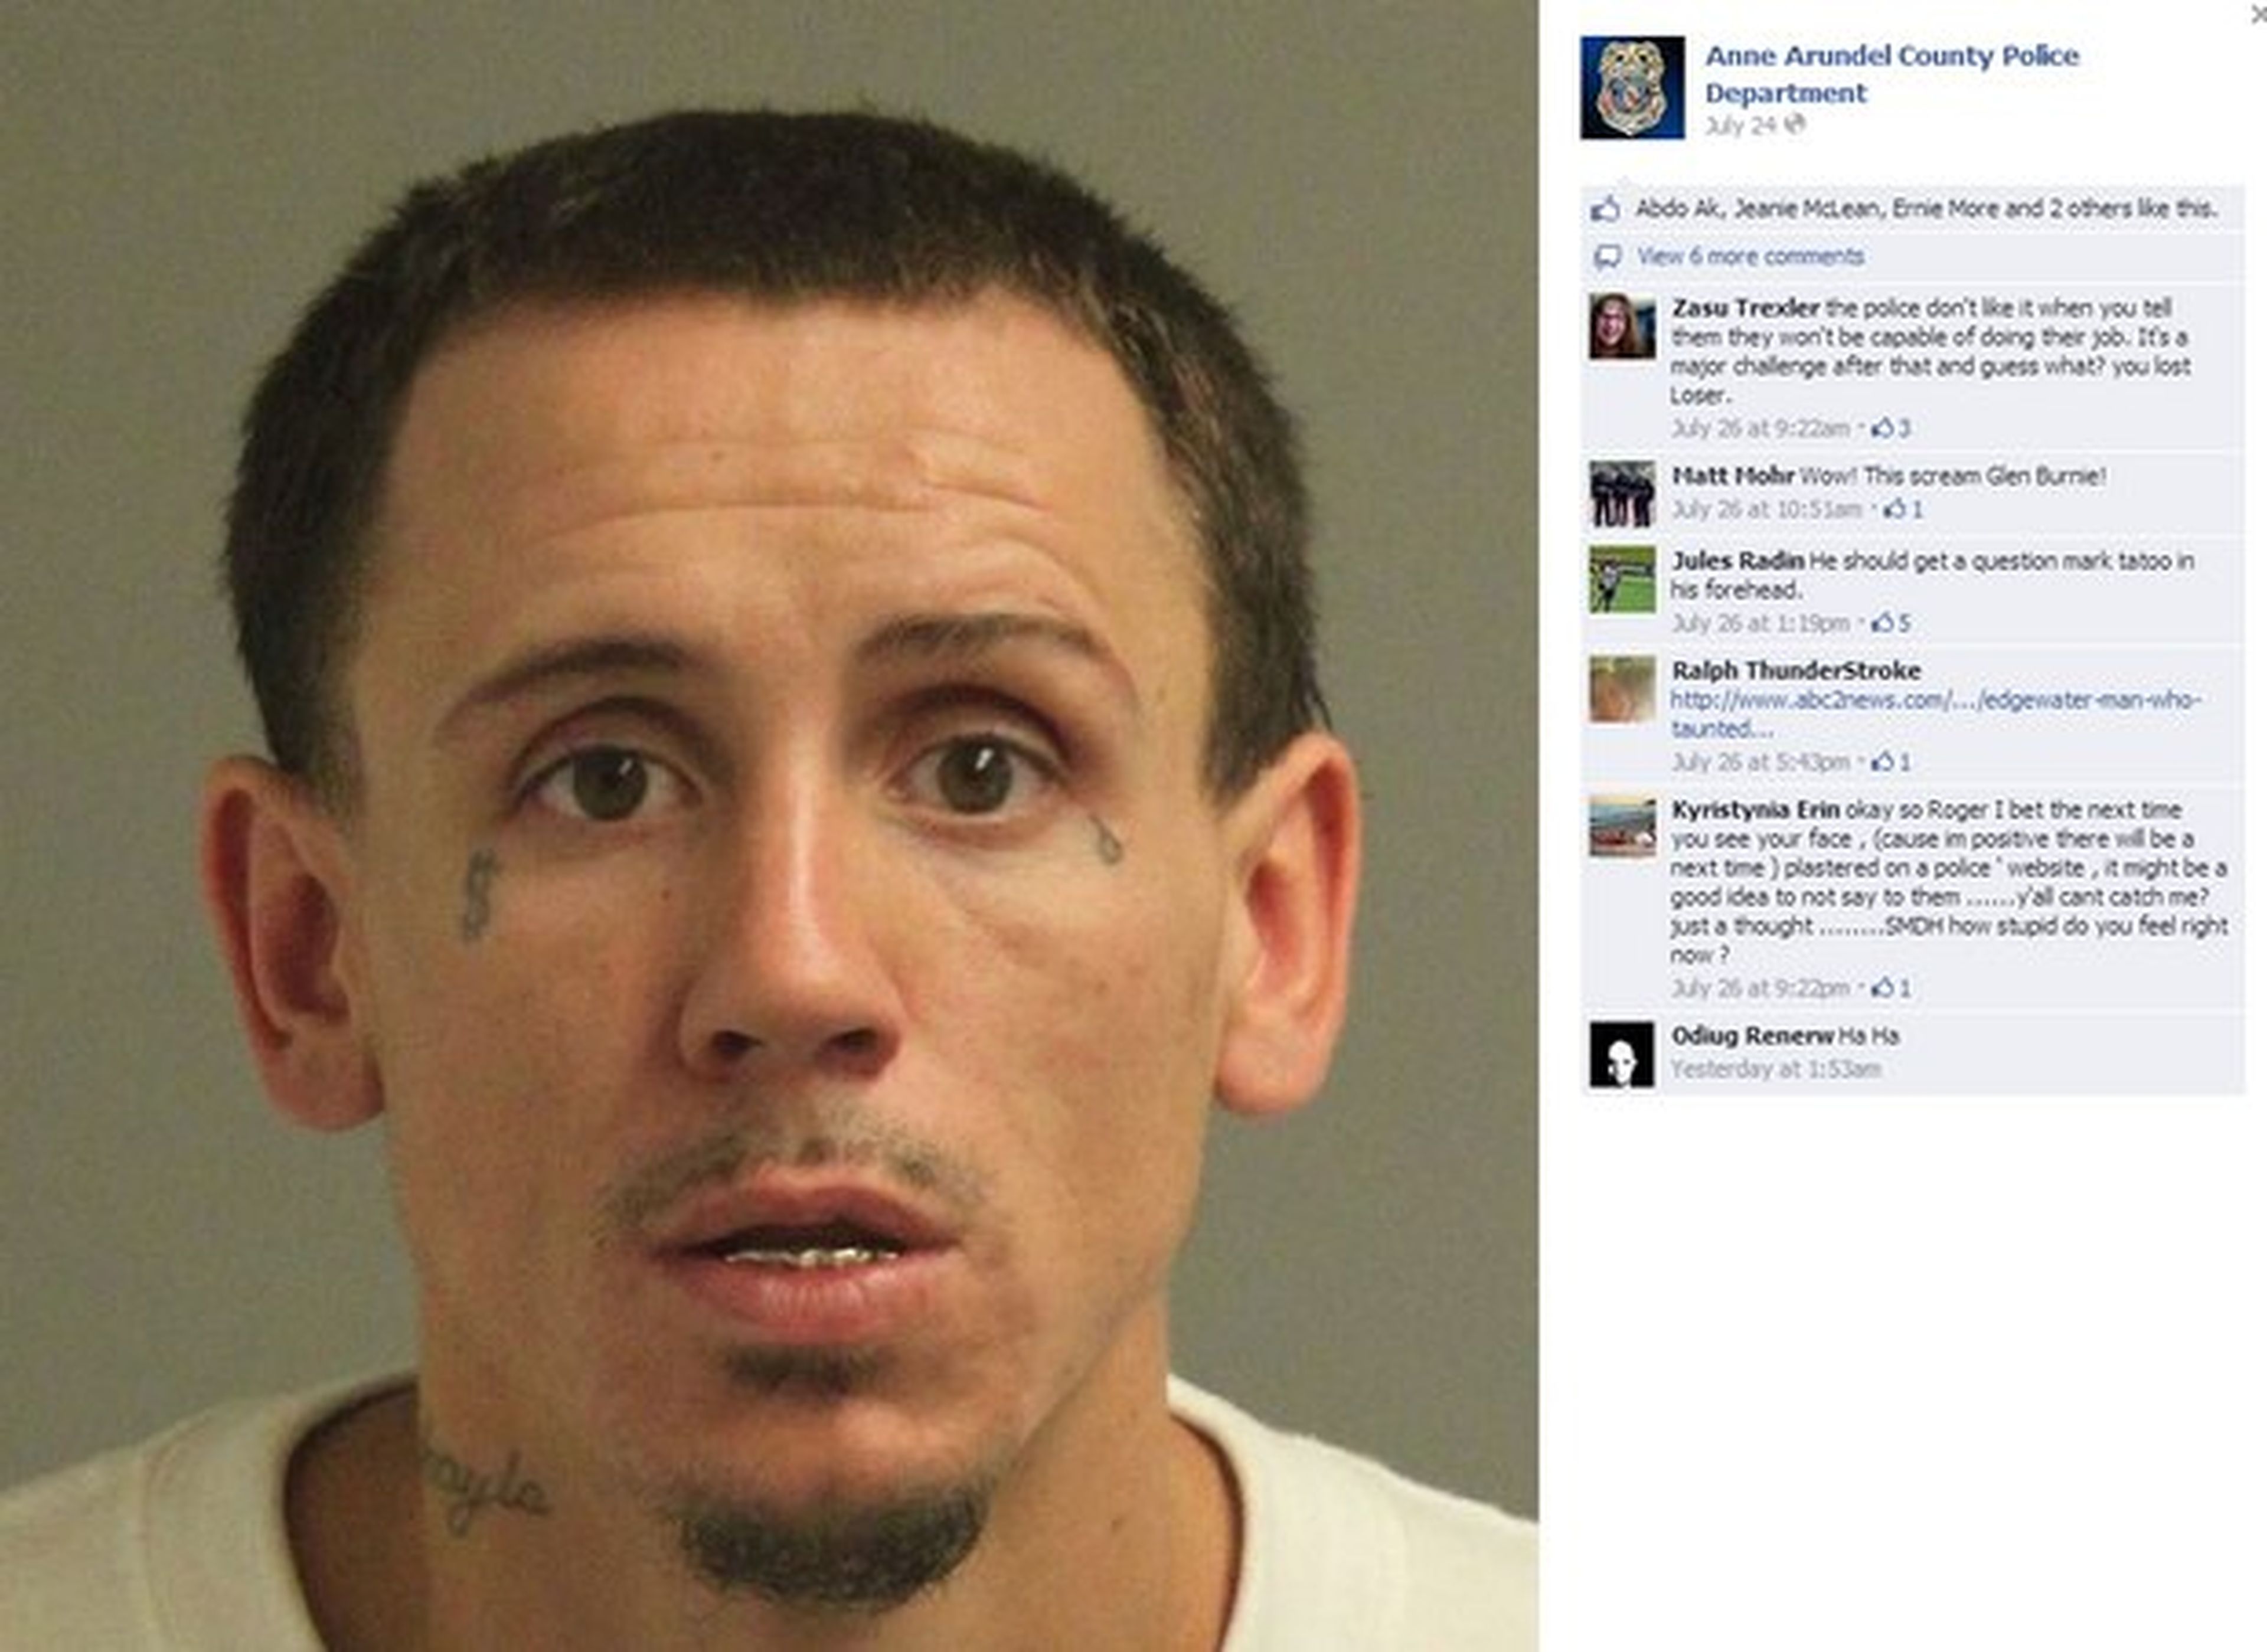 Fugado es detenido tras burlarse de la policía en Facebook